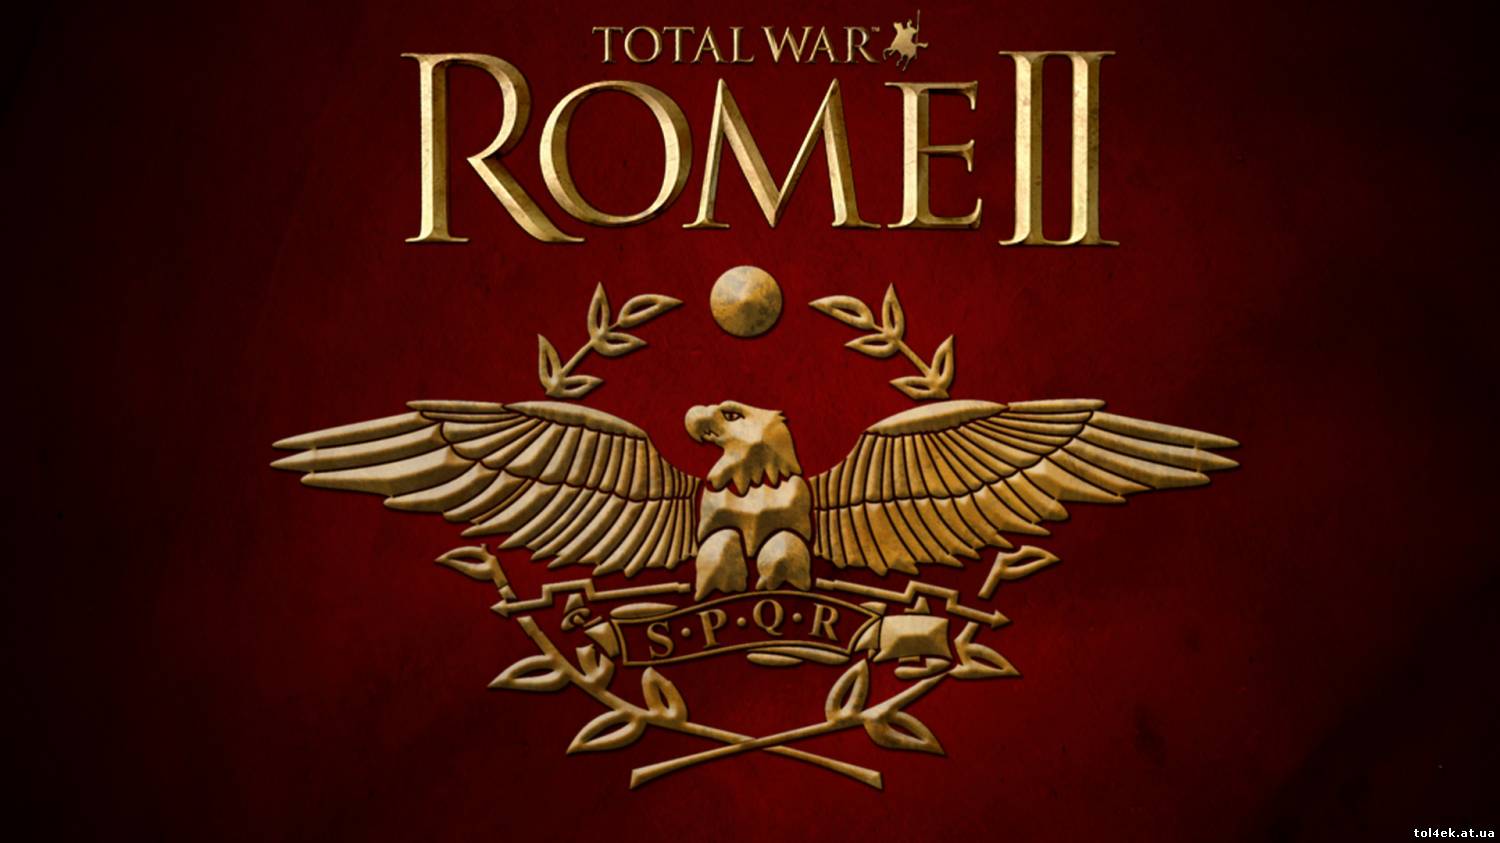 [UPDATE] Total War: Rome II - UPDATE 3 - RELOADED